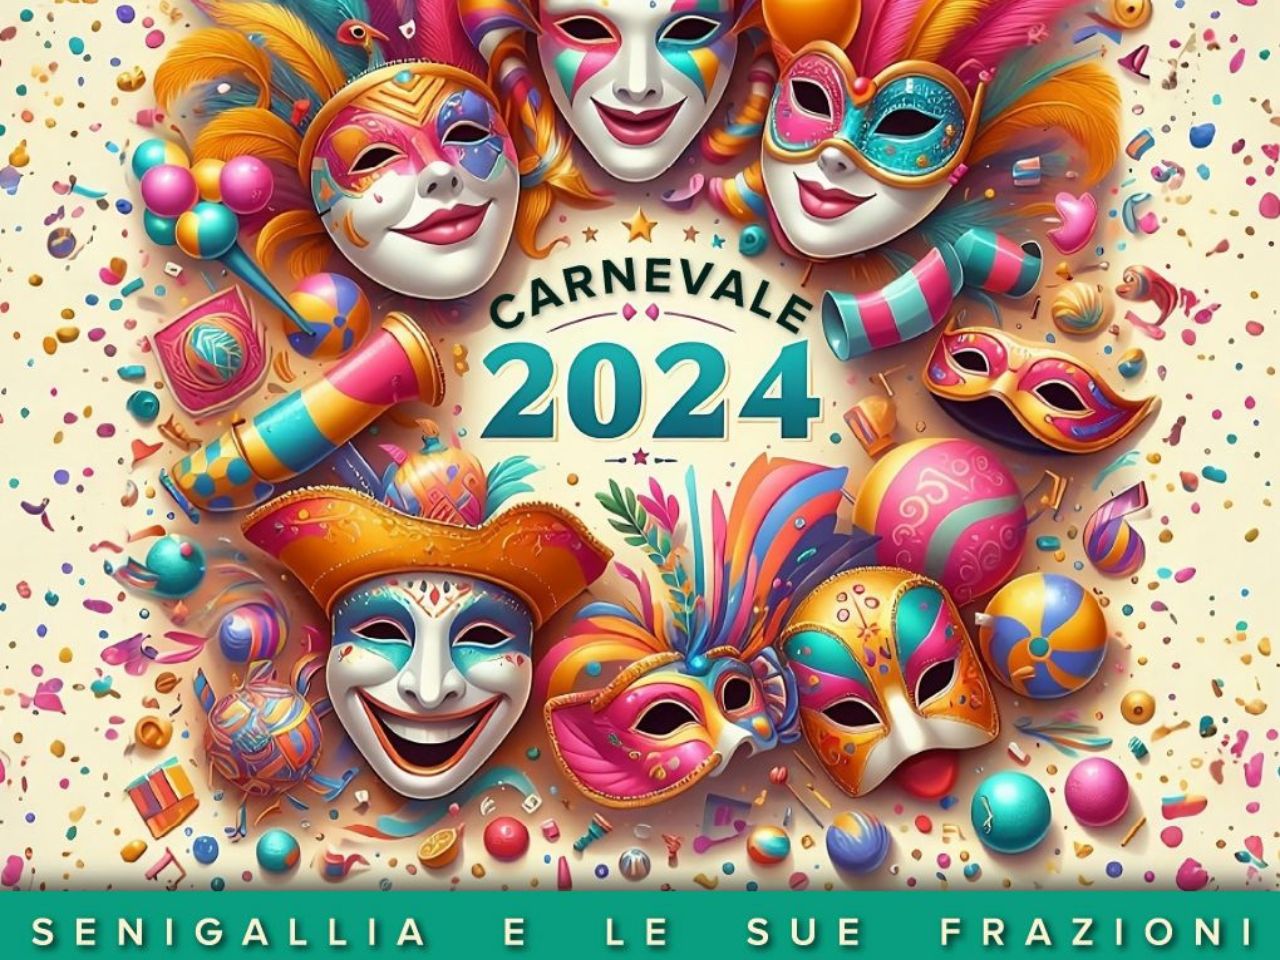 Il Carnevale di Senigallia, nuova edizione distribuita sul territorio